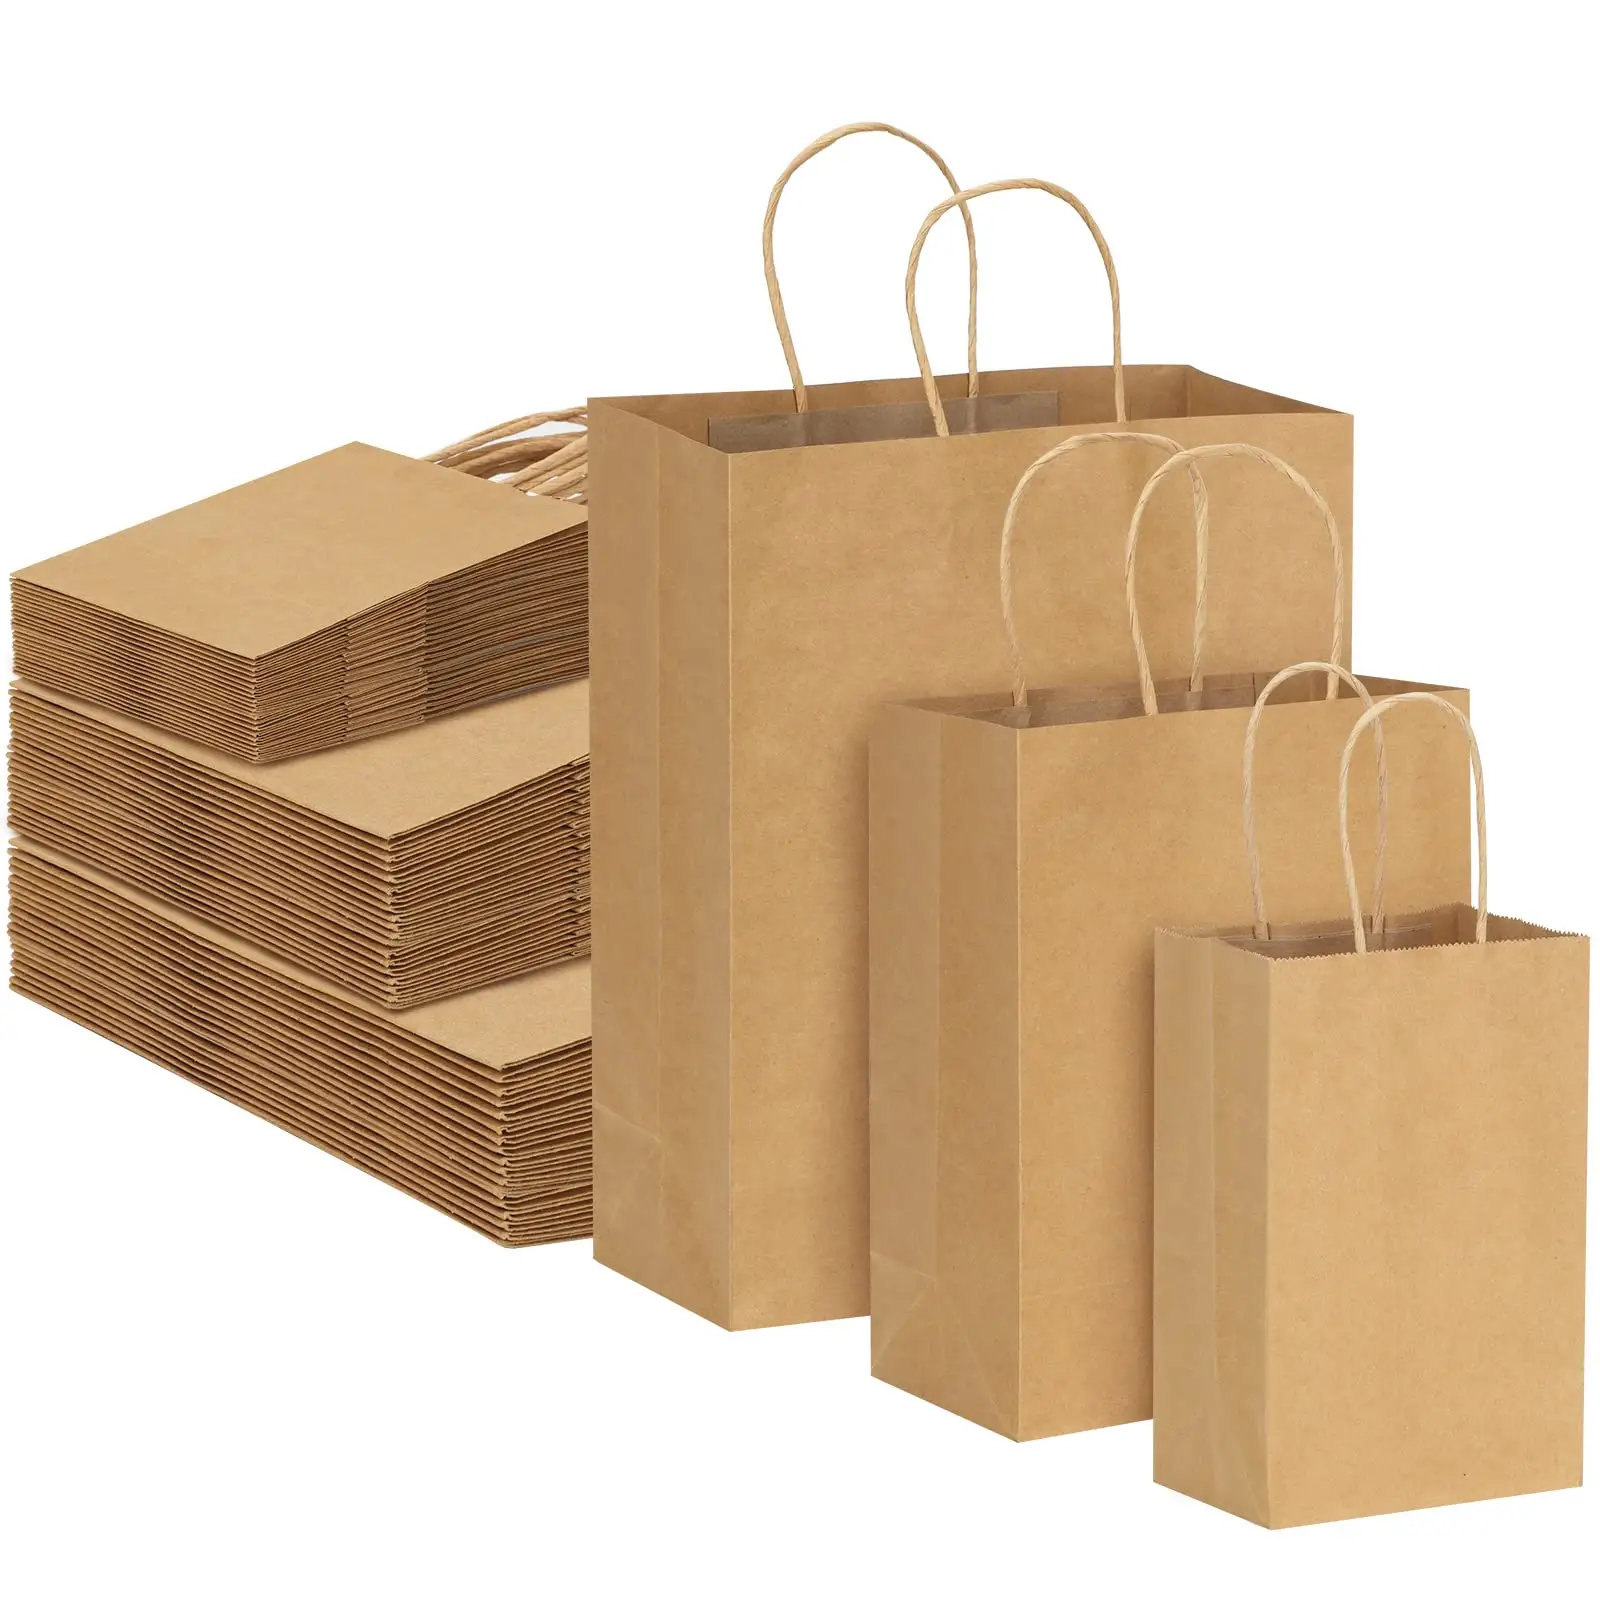 손잡이가있는 갈색 종이 가방 혼합 크기 선물 가방 비즈니스 쇼핑을위한 대량 크래프트 종이 소매 상품 가방